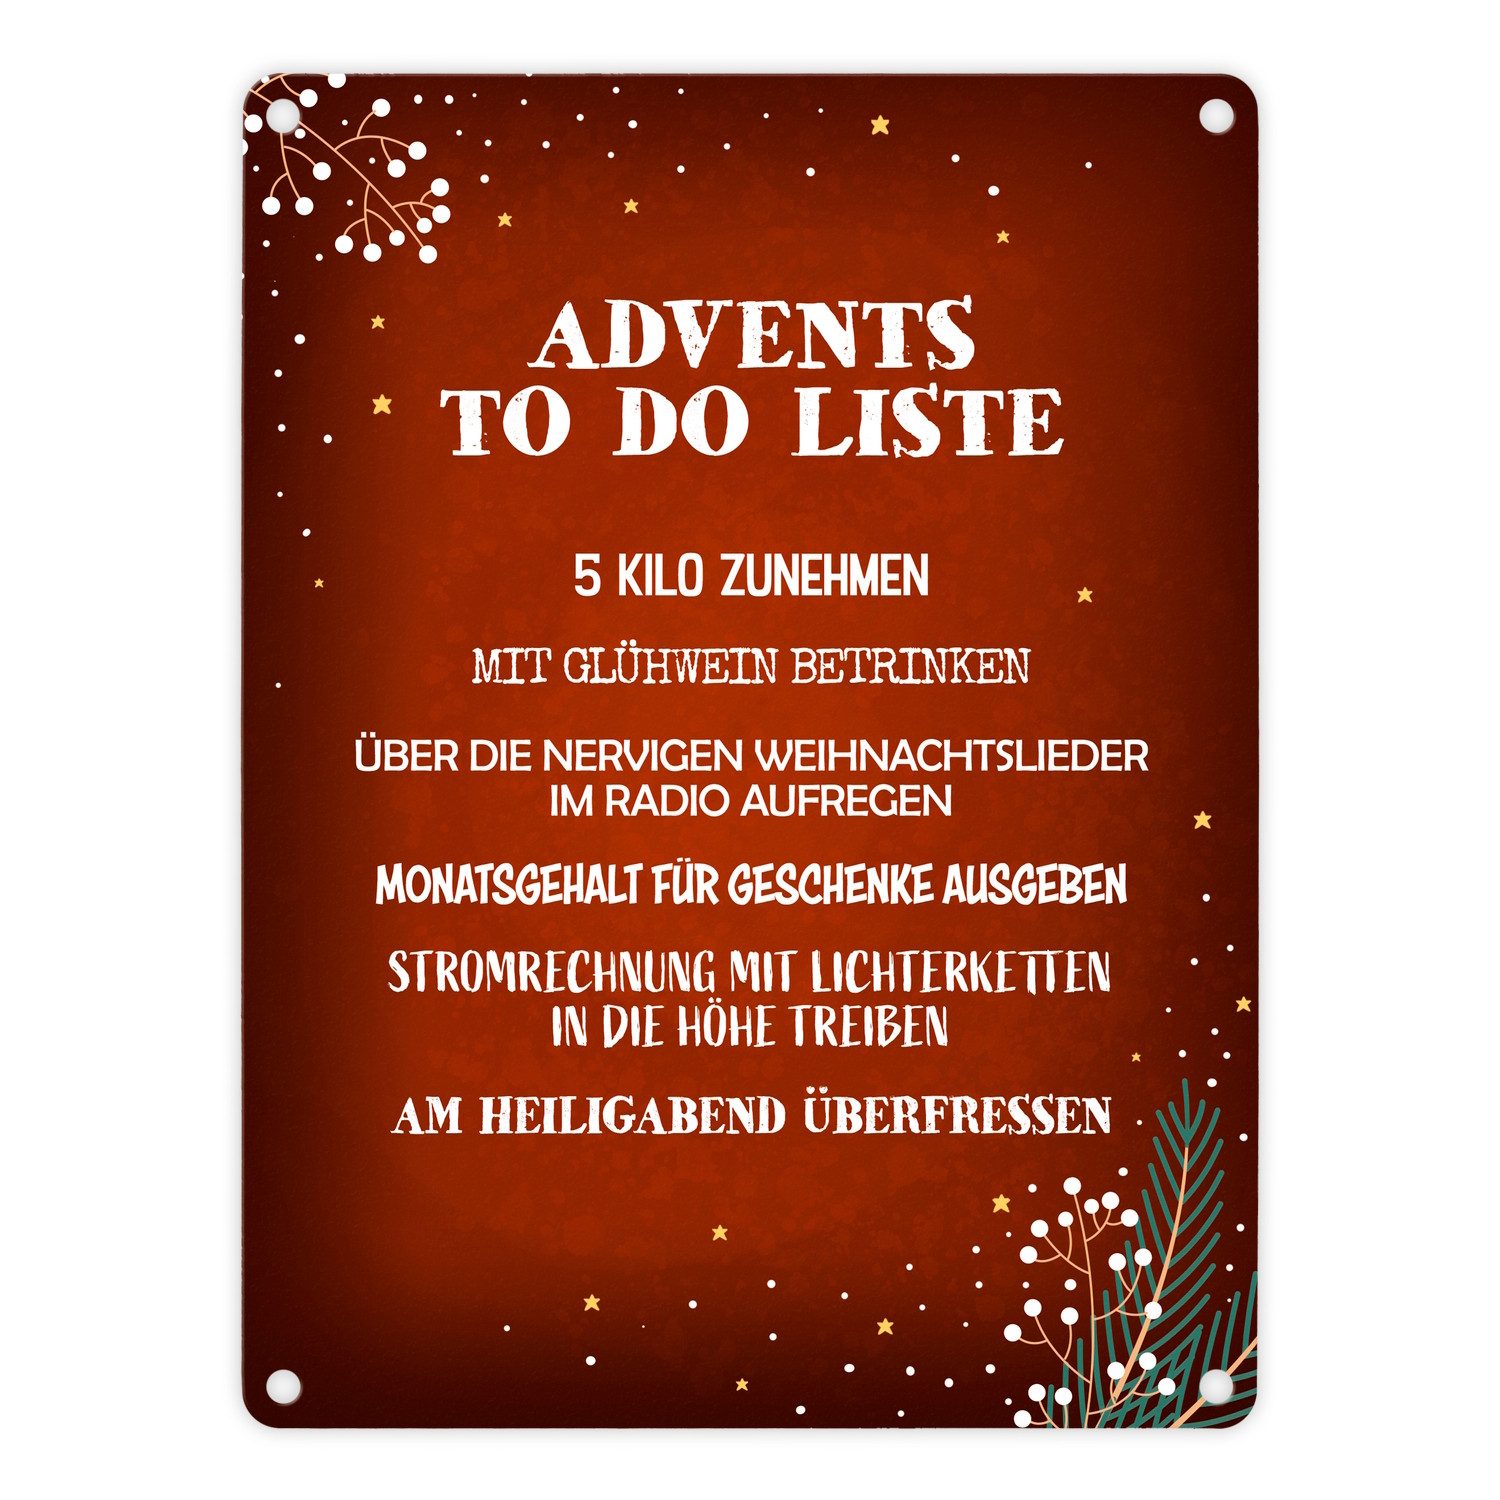 speecheese Metallschild Lustige Advents to do Liste Metallschild in rot Weihnachten Glühwein